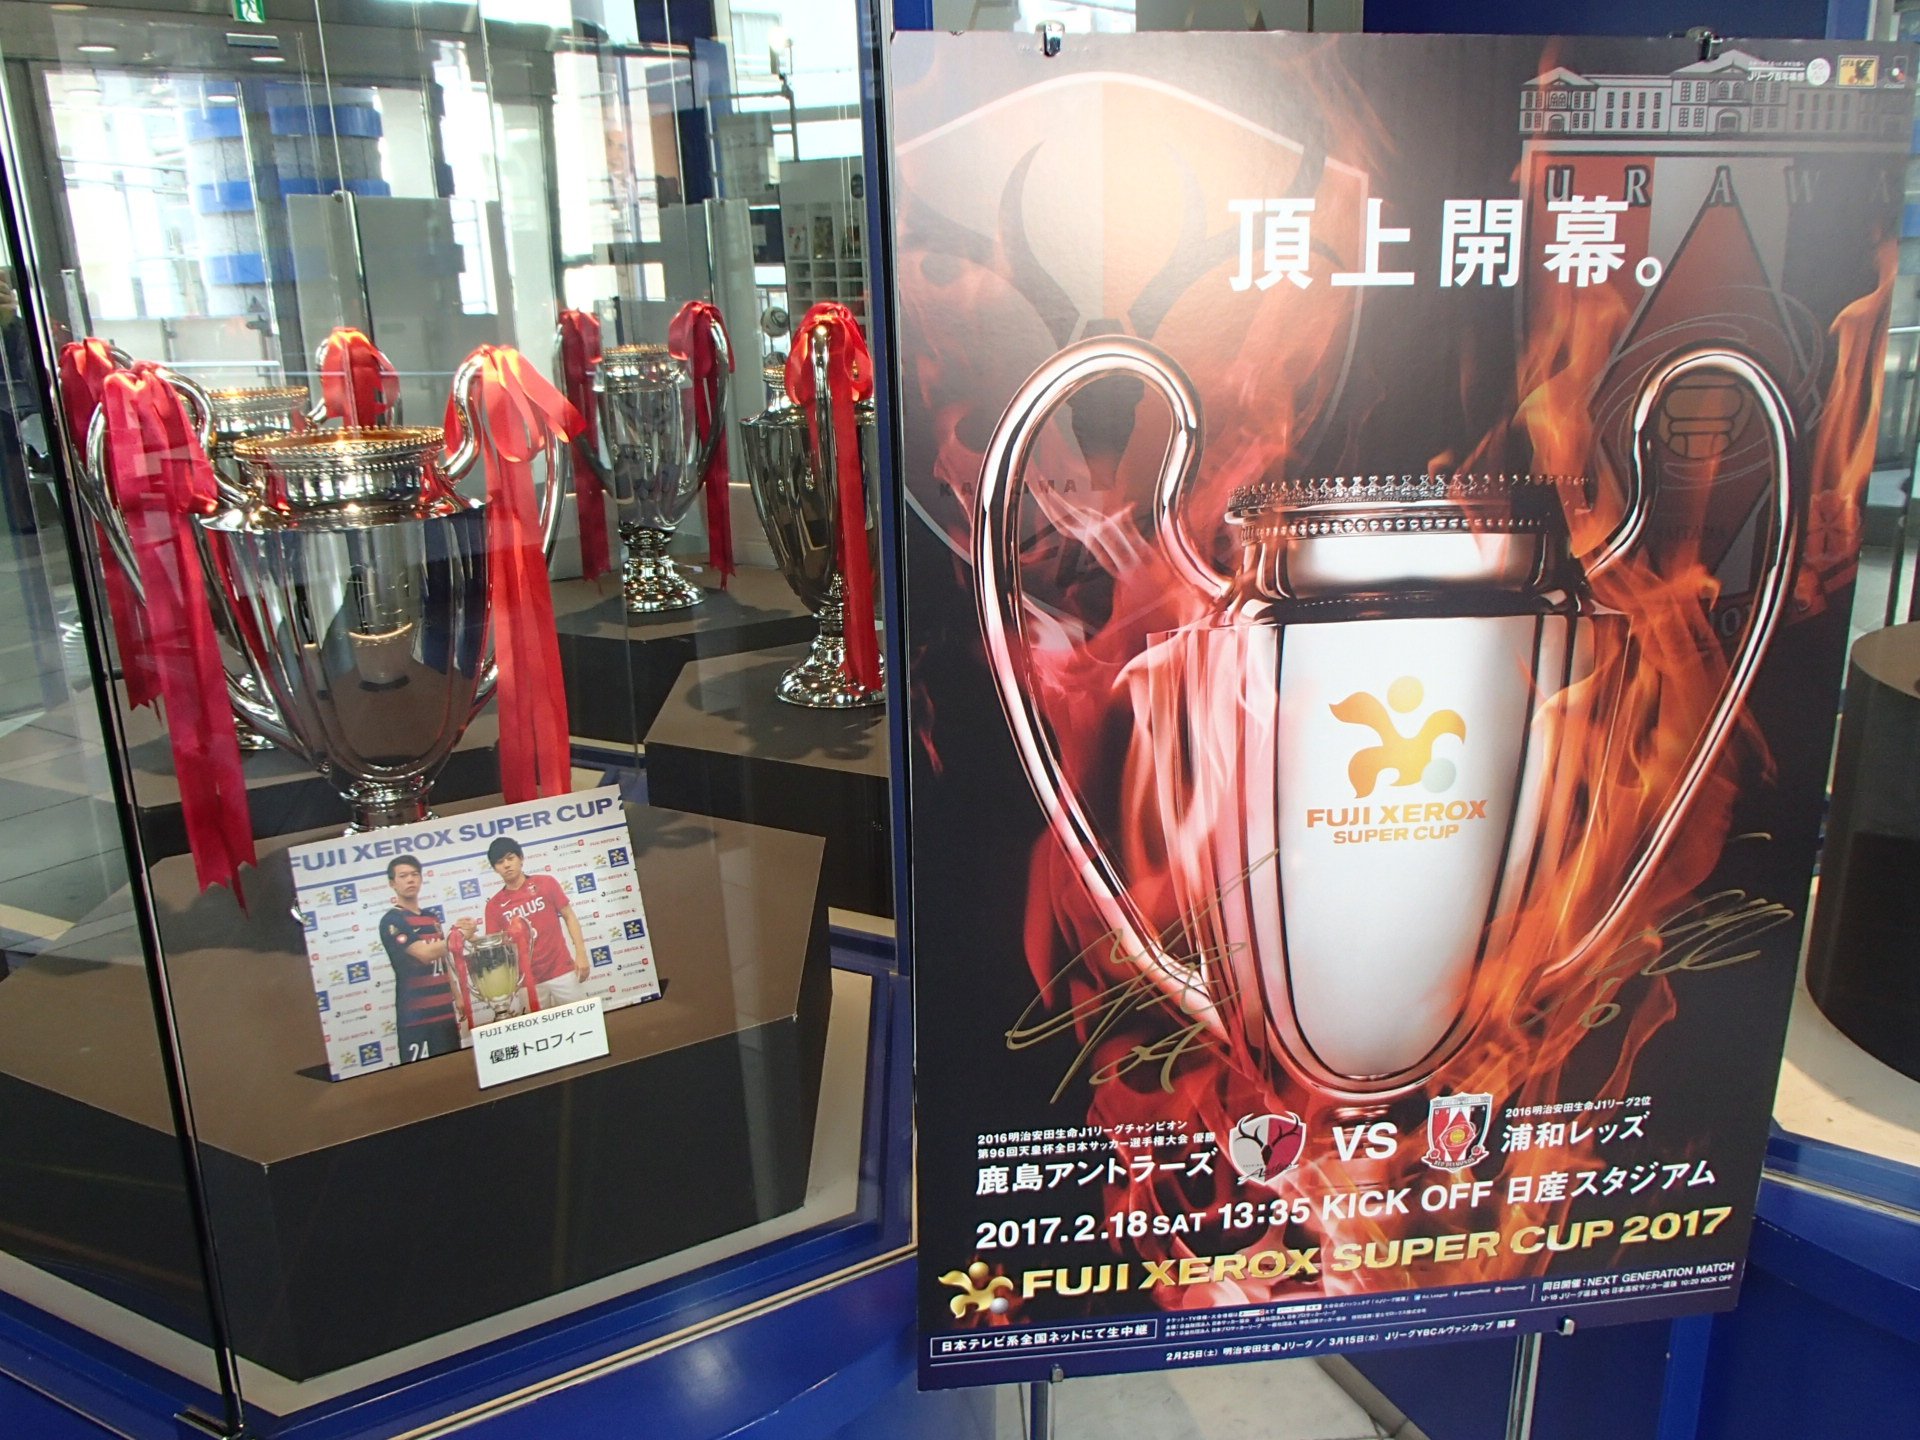 日本サッカーミュージアム なでしこジャパンアルガルベカップ17の記者会見場で記念撮影 O 職場体験最終日に貴重な体験ができました Fuji Xerox Super Cup 17トロフィーとポスターの展示は明日10日 金 までです T Co Pu8jqvcp8o